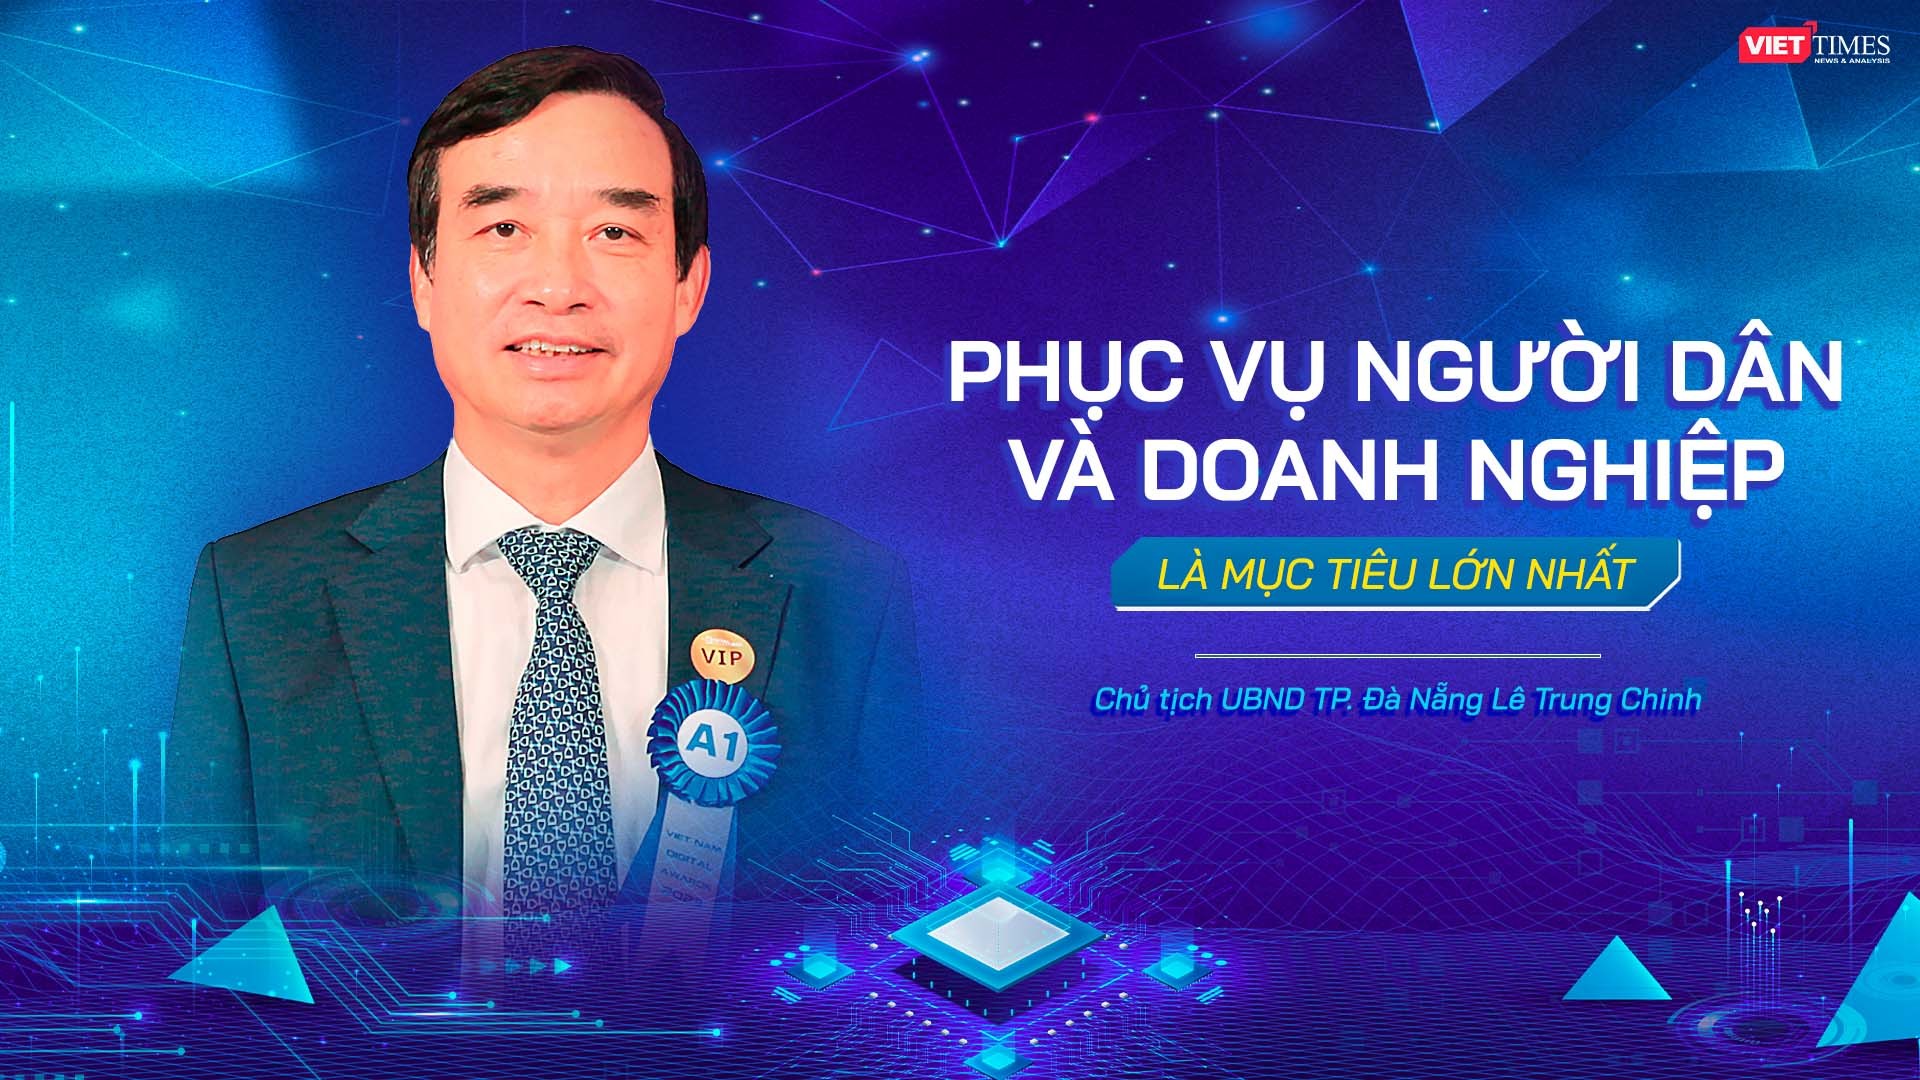 Chủ tịch UBND TP Đà Nẵng Lê Trung Chinh: Phục vụ người dân và doanh nghiệp là mục tiêu lớn nhất